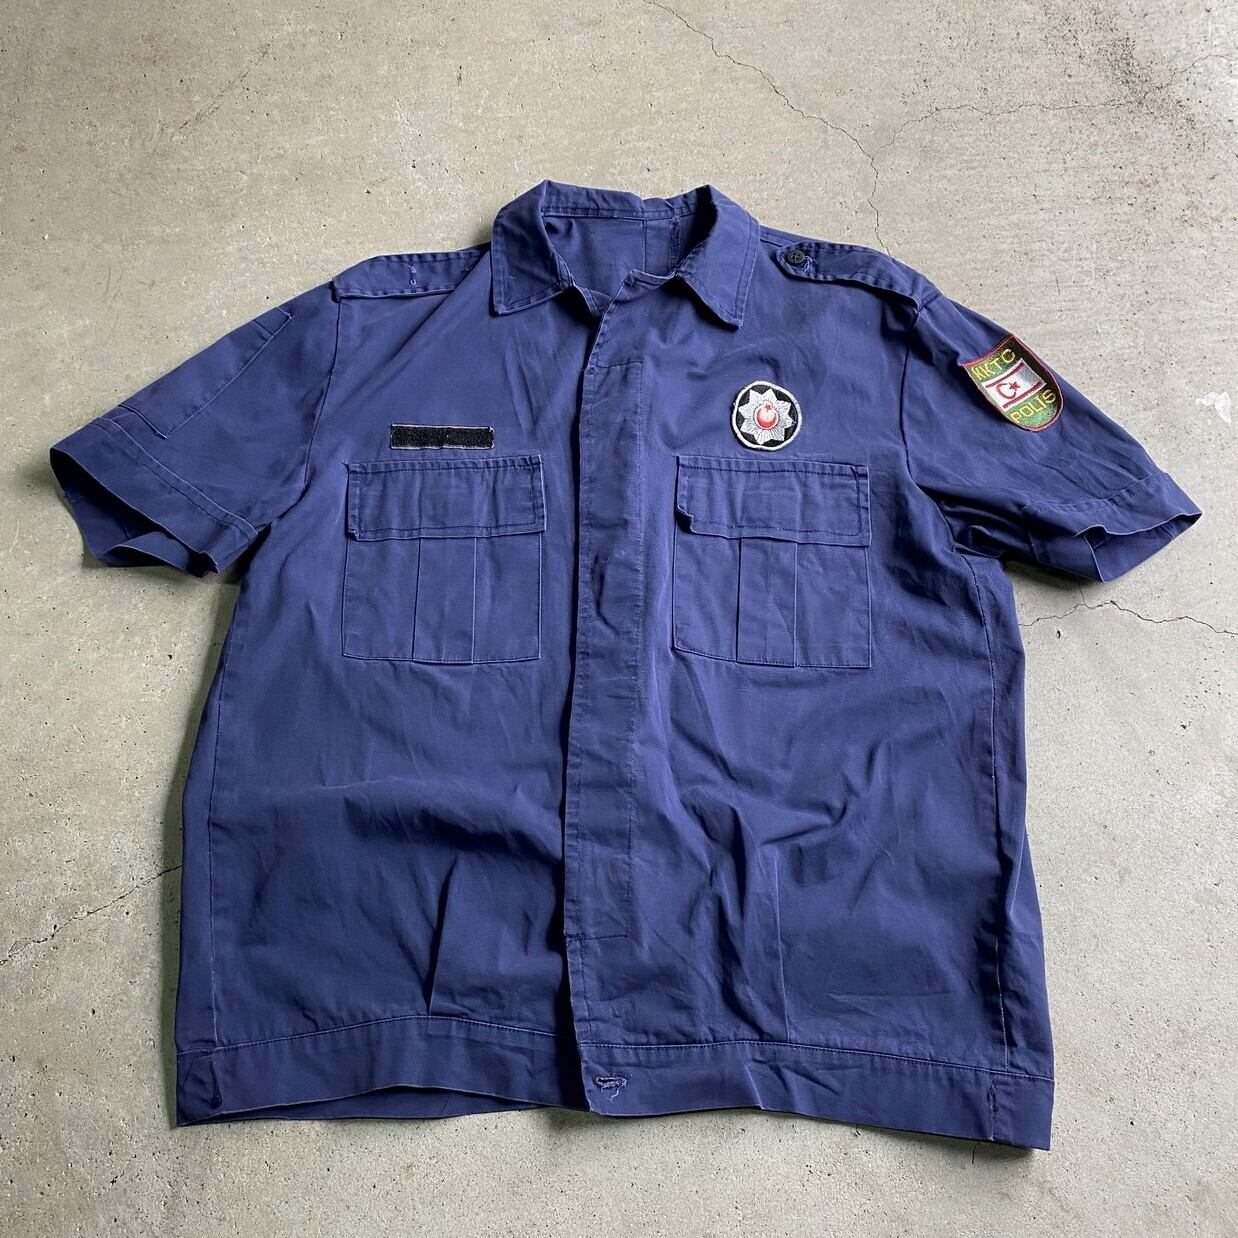 PROTEXALL 70s アメリカ製 ワッペン 半袖 ワークシャツ ネイビー  オールド ヴィンテージ メンズ  220729 メール便可